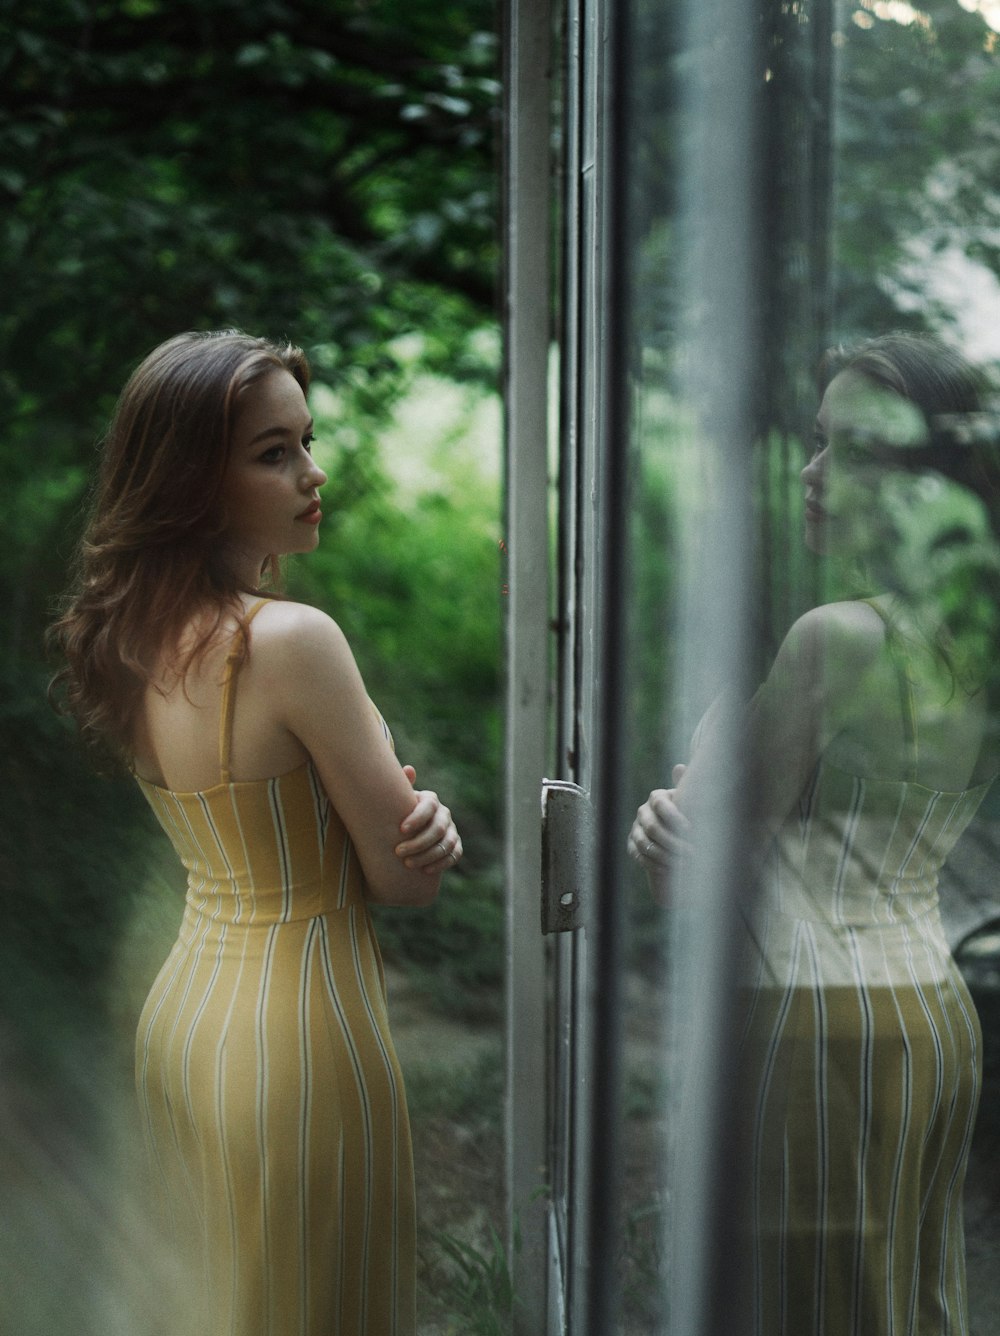 Donna in vestito giallo spaghetti strap in piedi accanto alla finestra di vetro durante il giorno